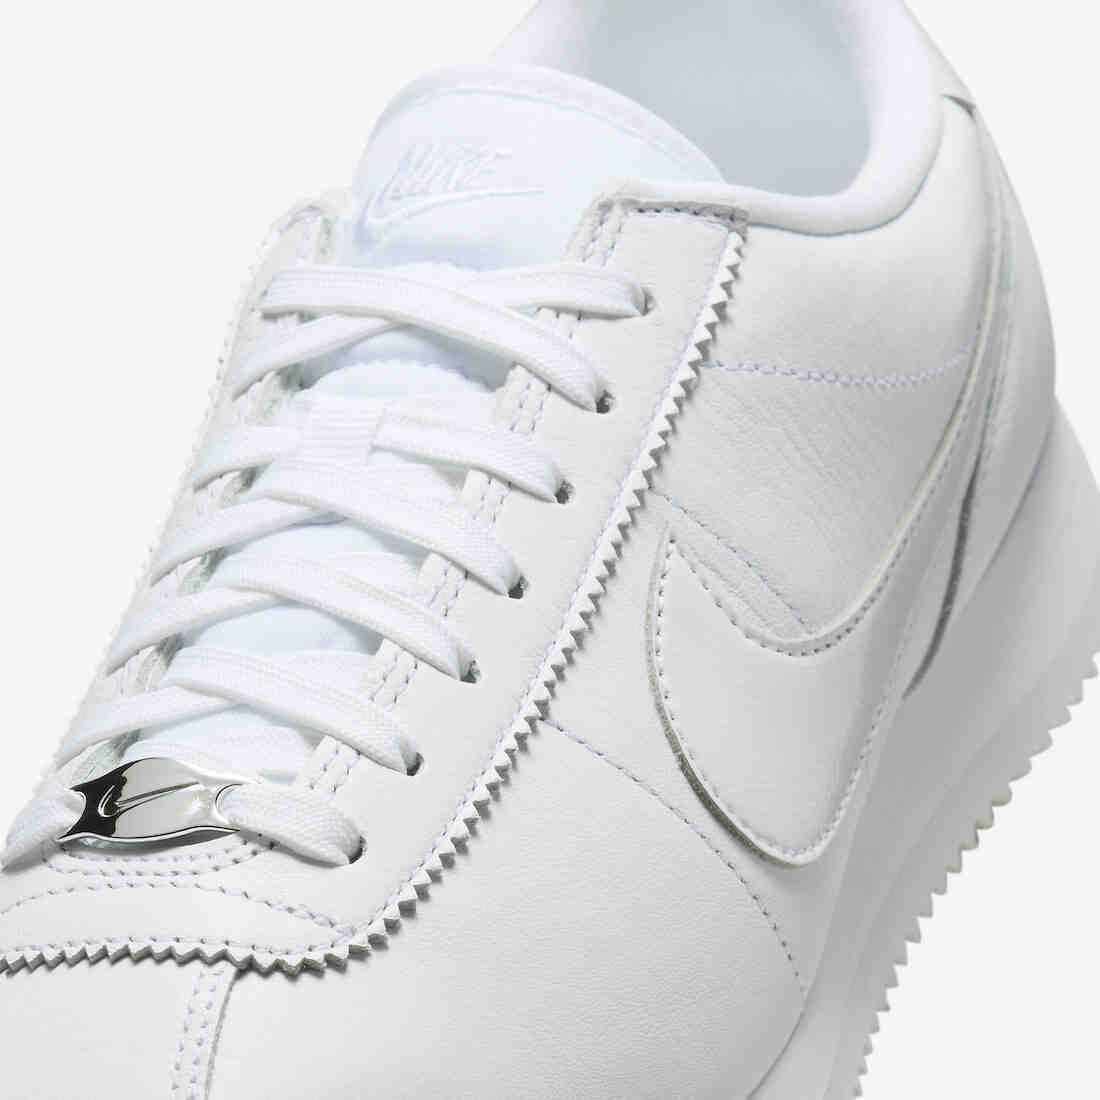 鲍尔曼, 运动鞋, 耐克, Triple White, Nike Cortez, NIKE, Cortez '72 - 耐克 Cortez '72 "三重白 "即将发布